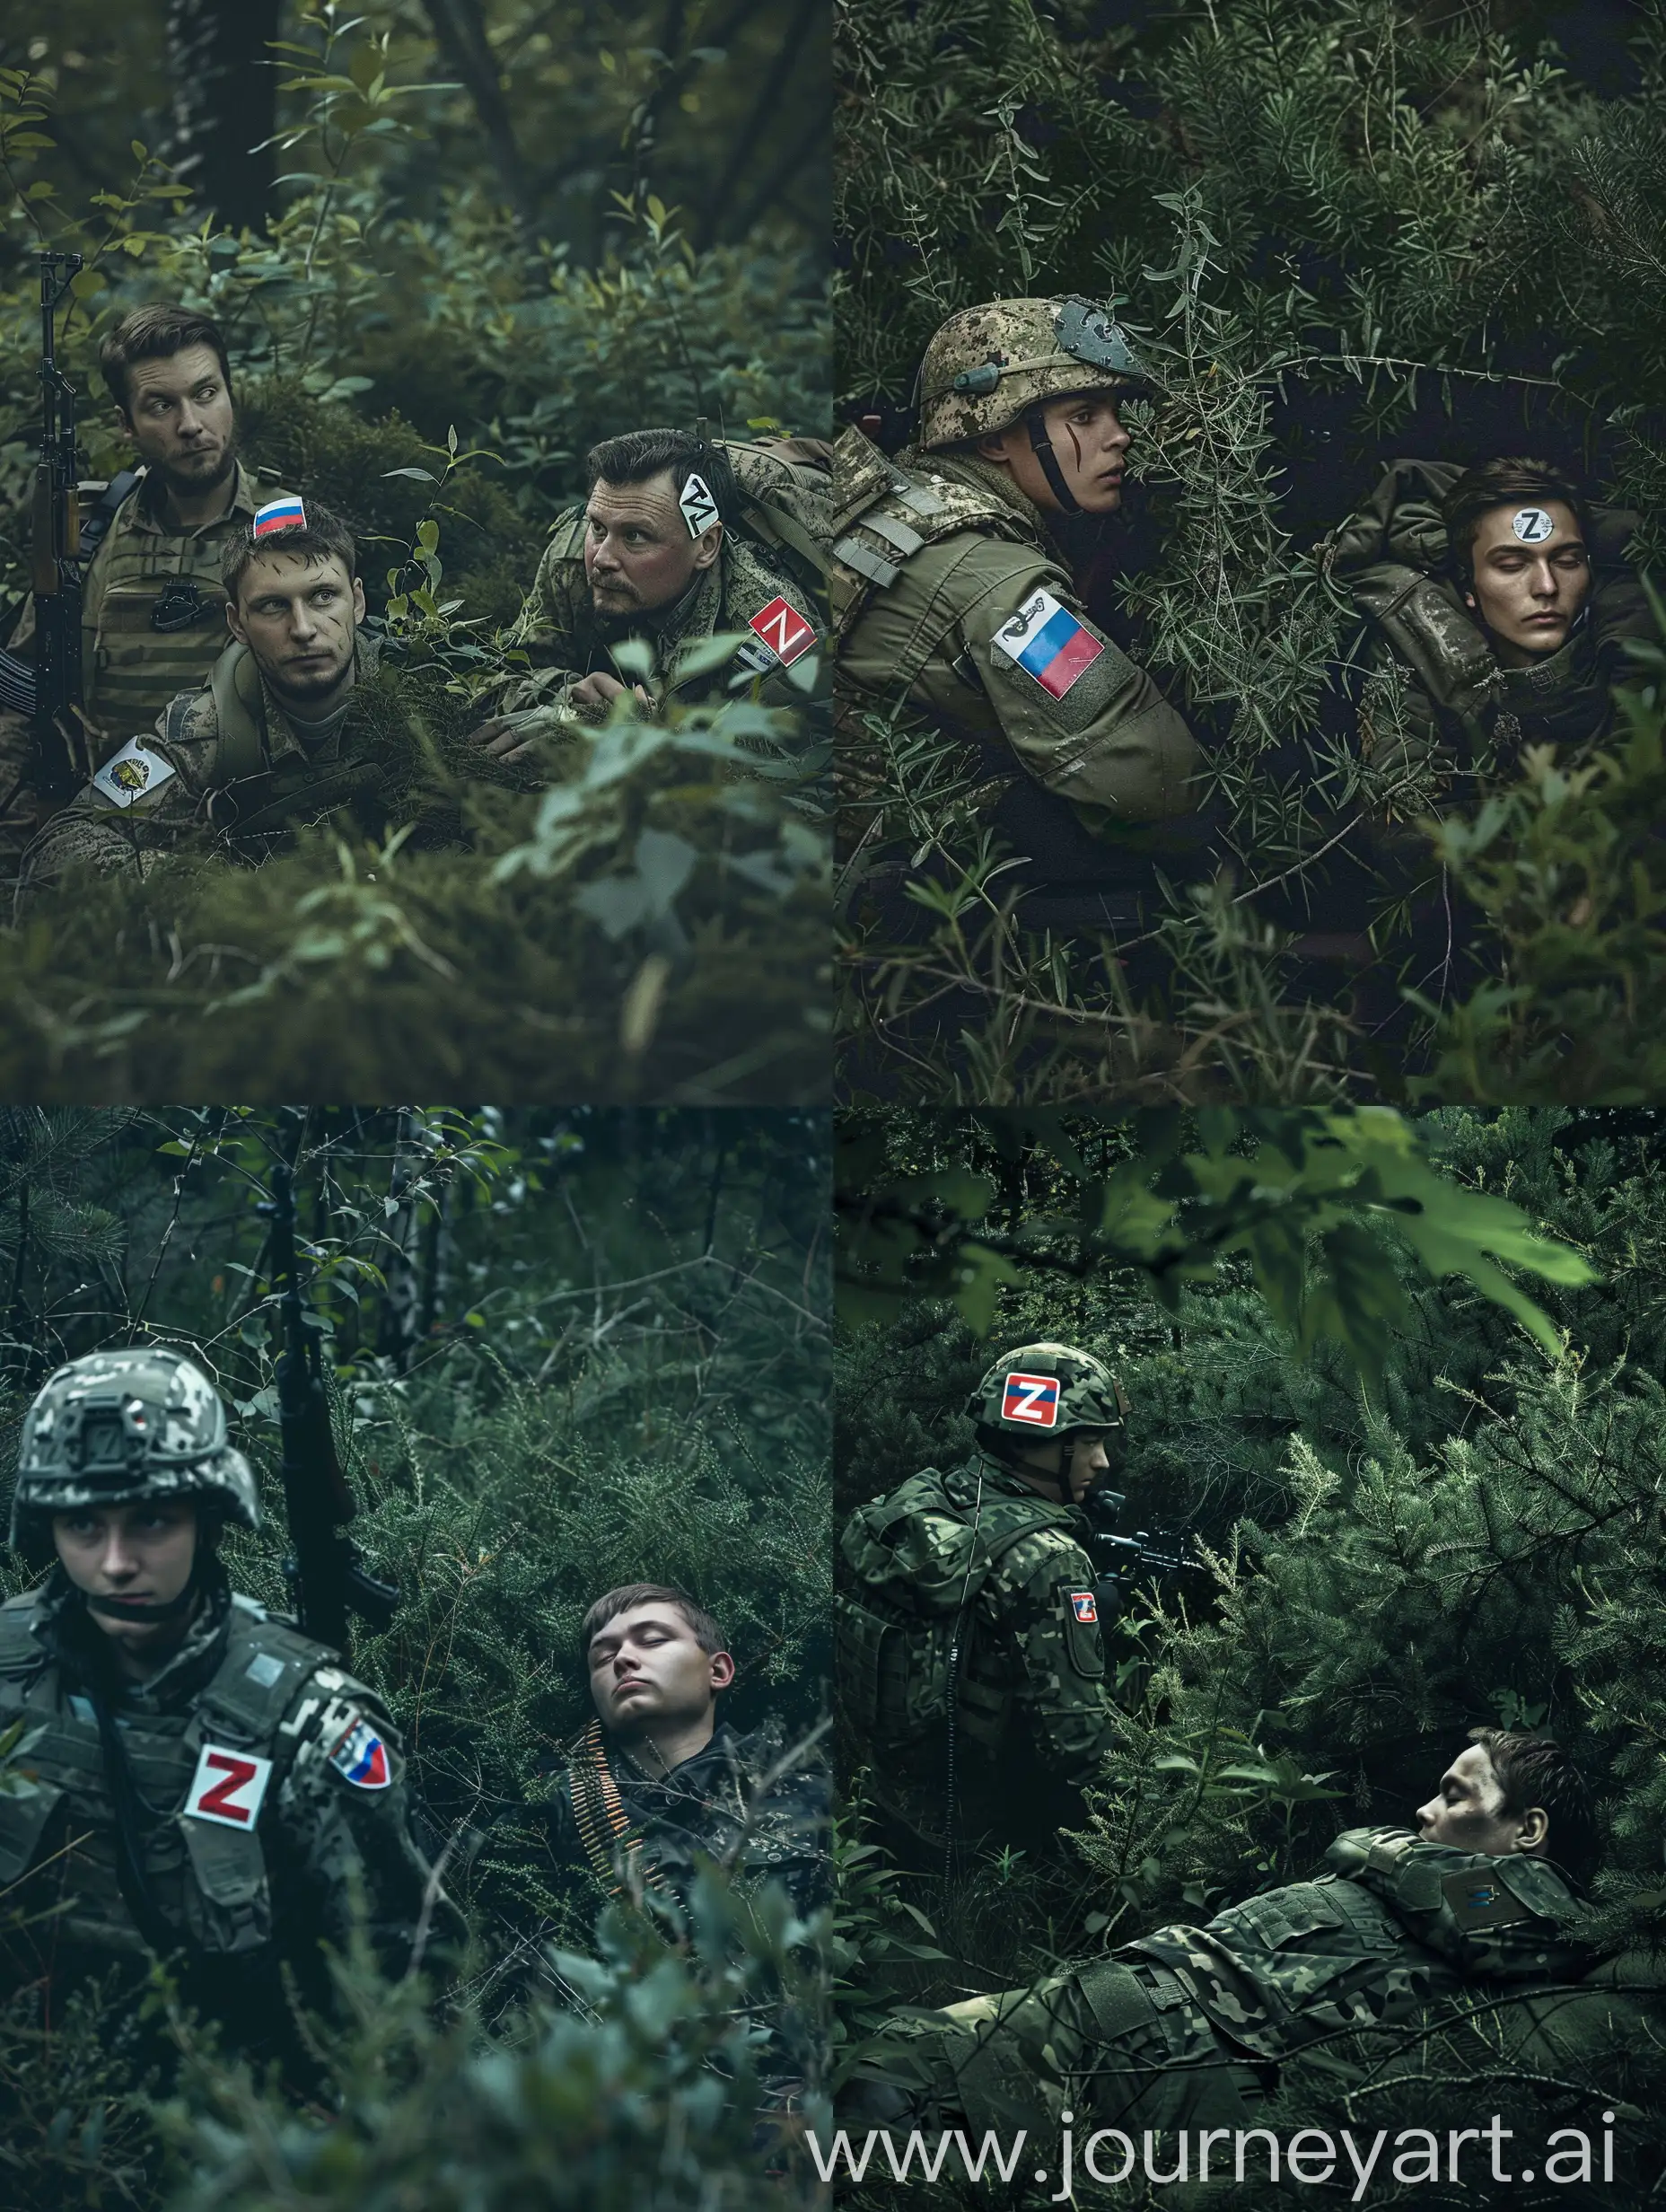 Постер к фильму о разведчике который лежит в кустах в лесу, слева от него снайпер полностью одетый в камуфляж из кустов, у них на плечах наклейки с русским флагом и буквой Z,